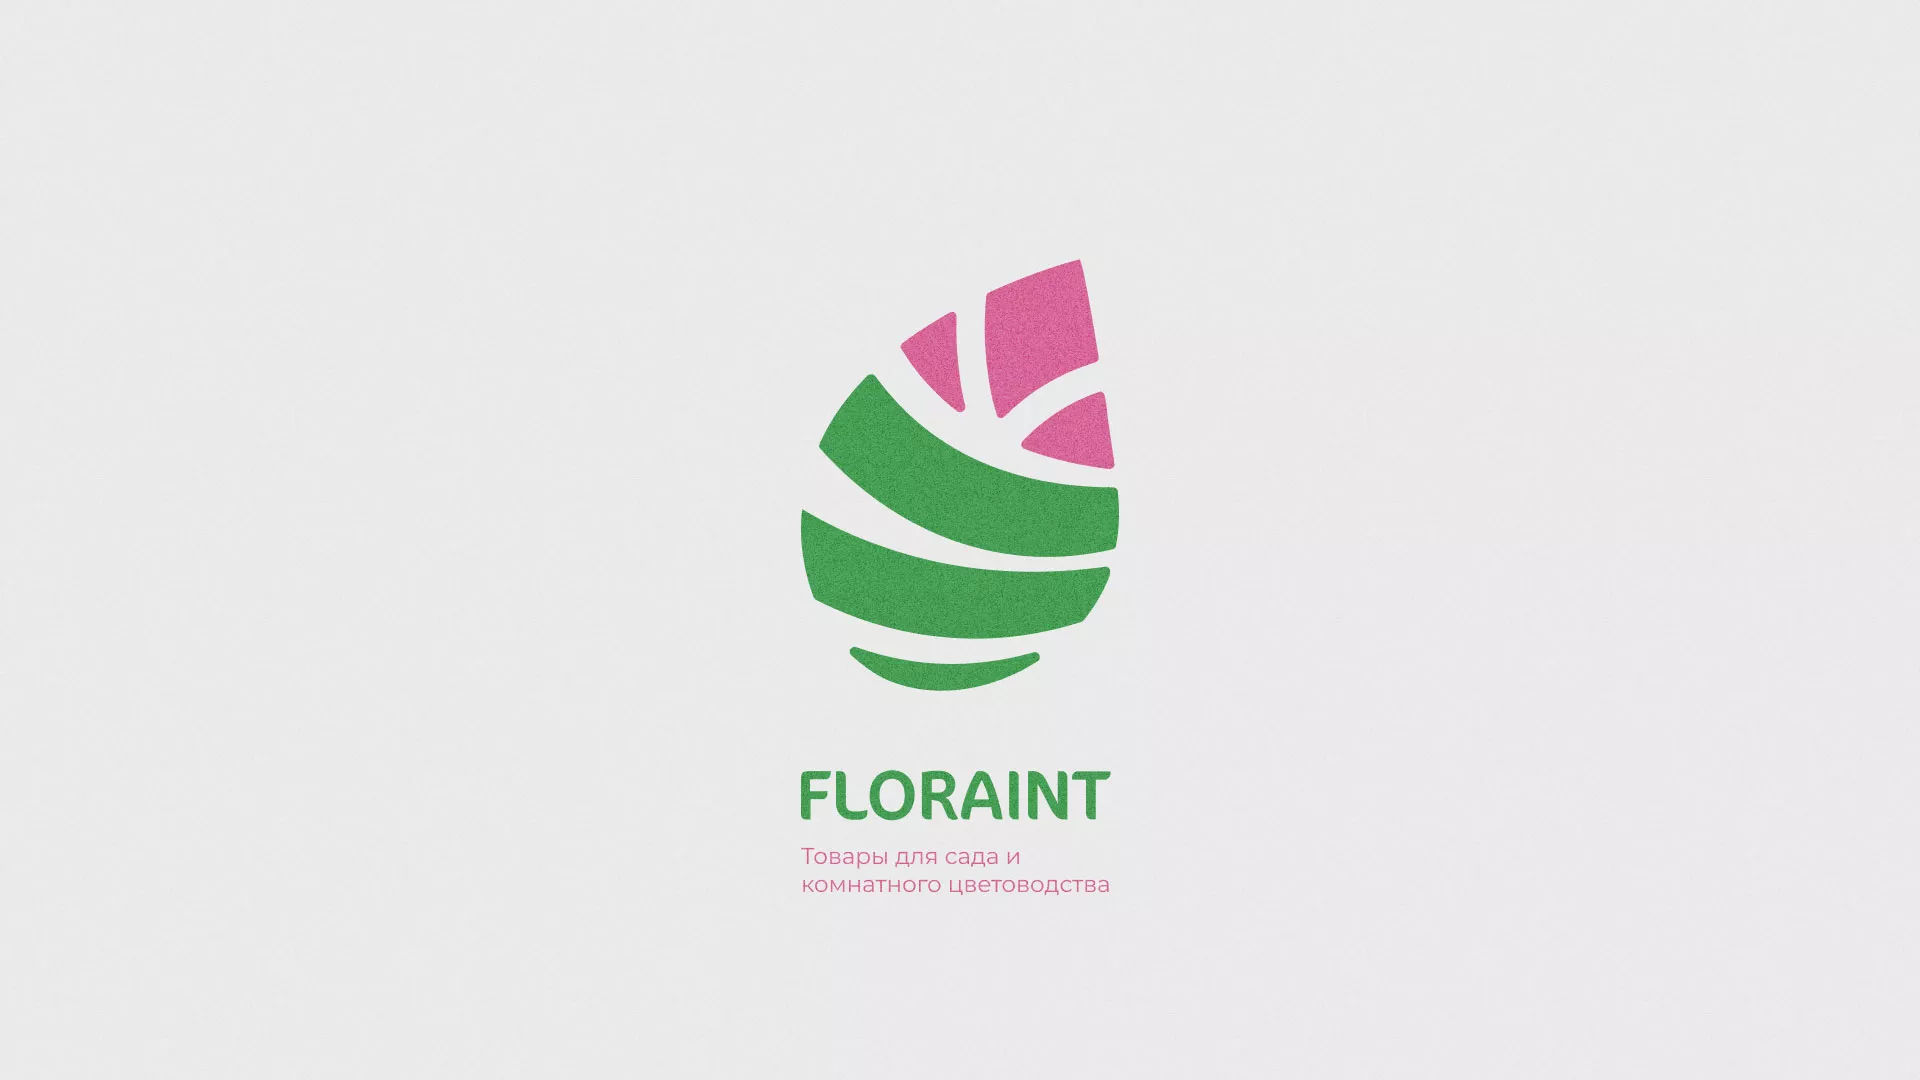 Разработка оформления профиля Instagram для магазина «Floraint» в Болохово